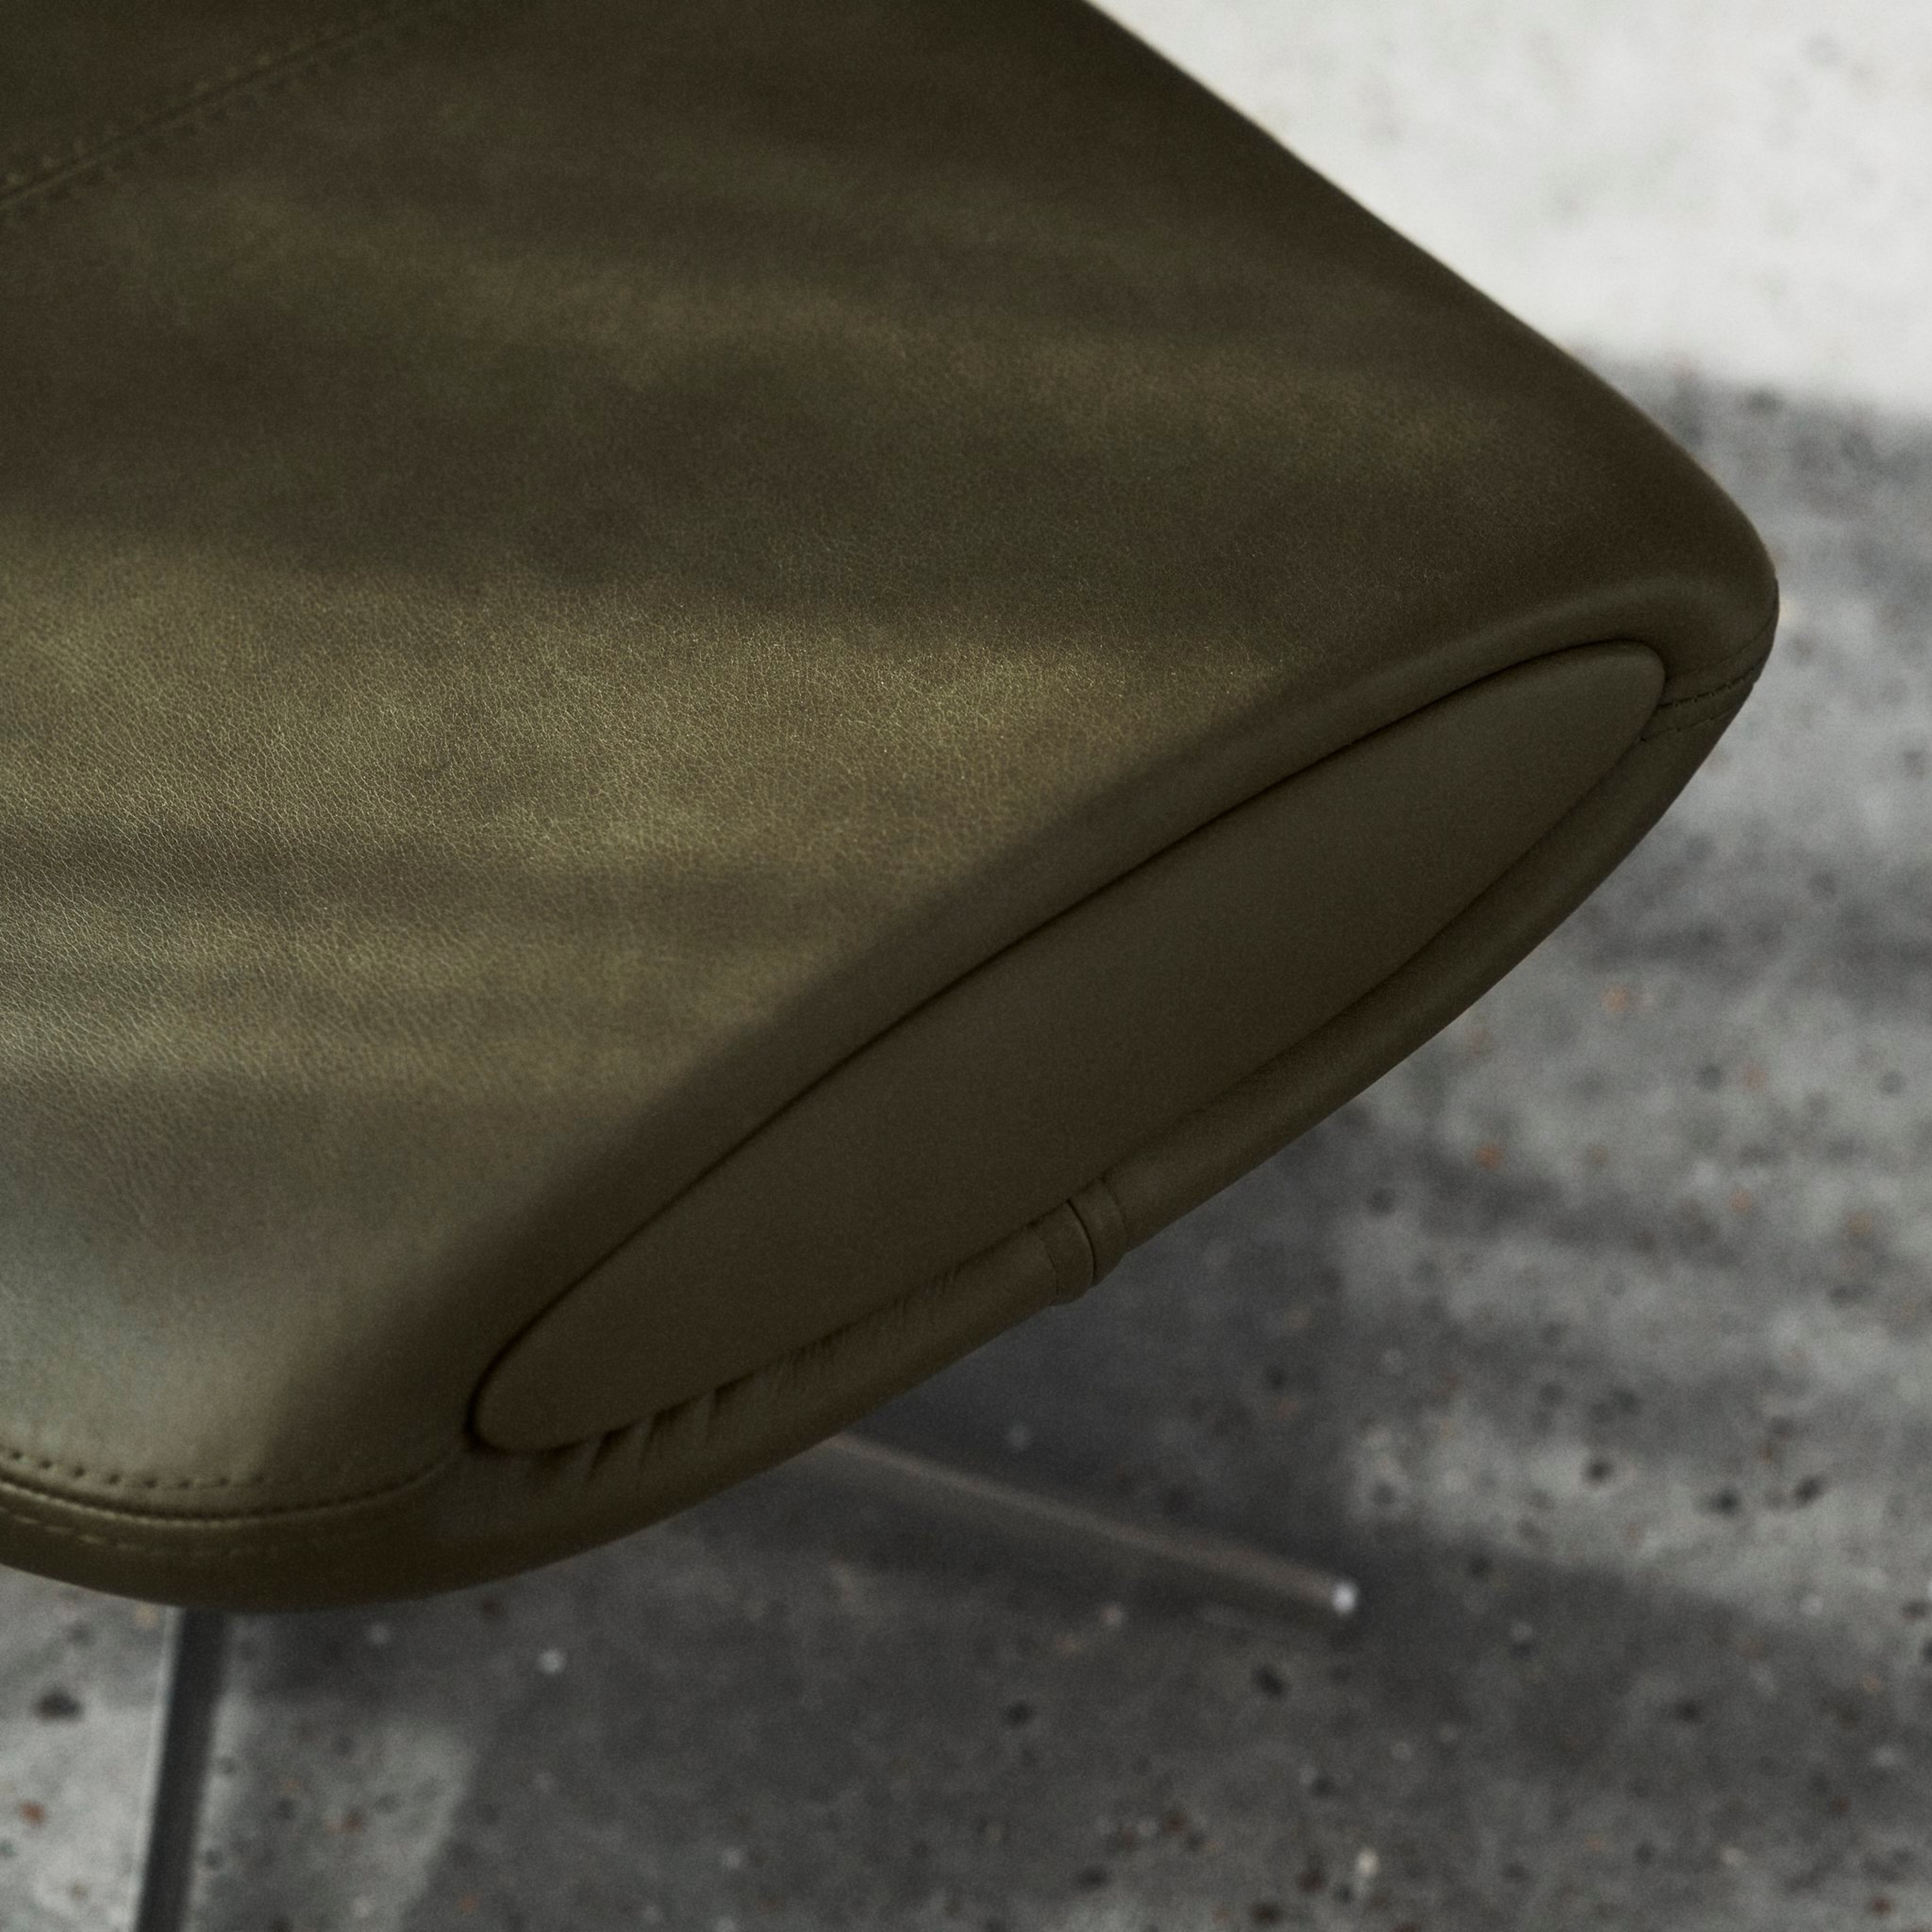 Край кресла с оливково-зеленого цвета с прострочкой на бетонном полу крупным планом.